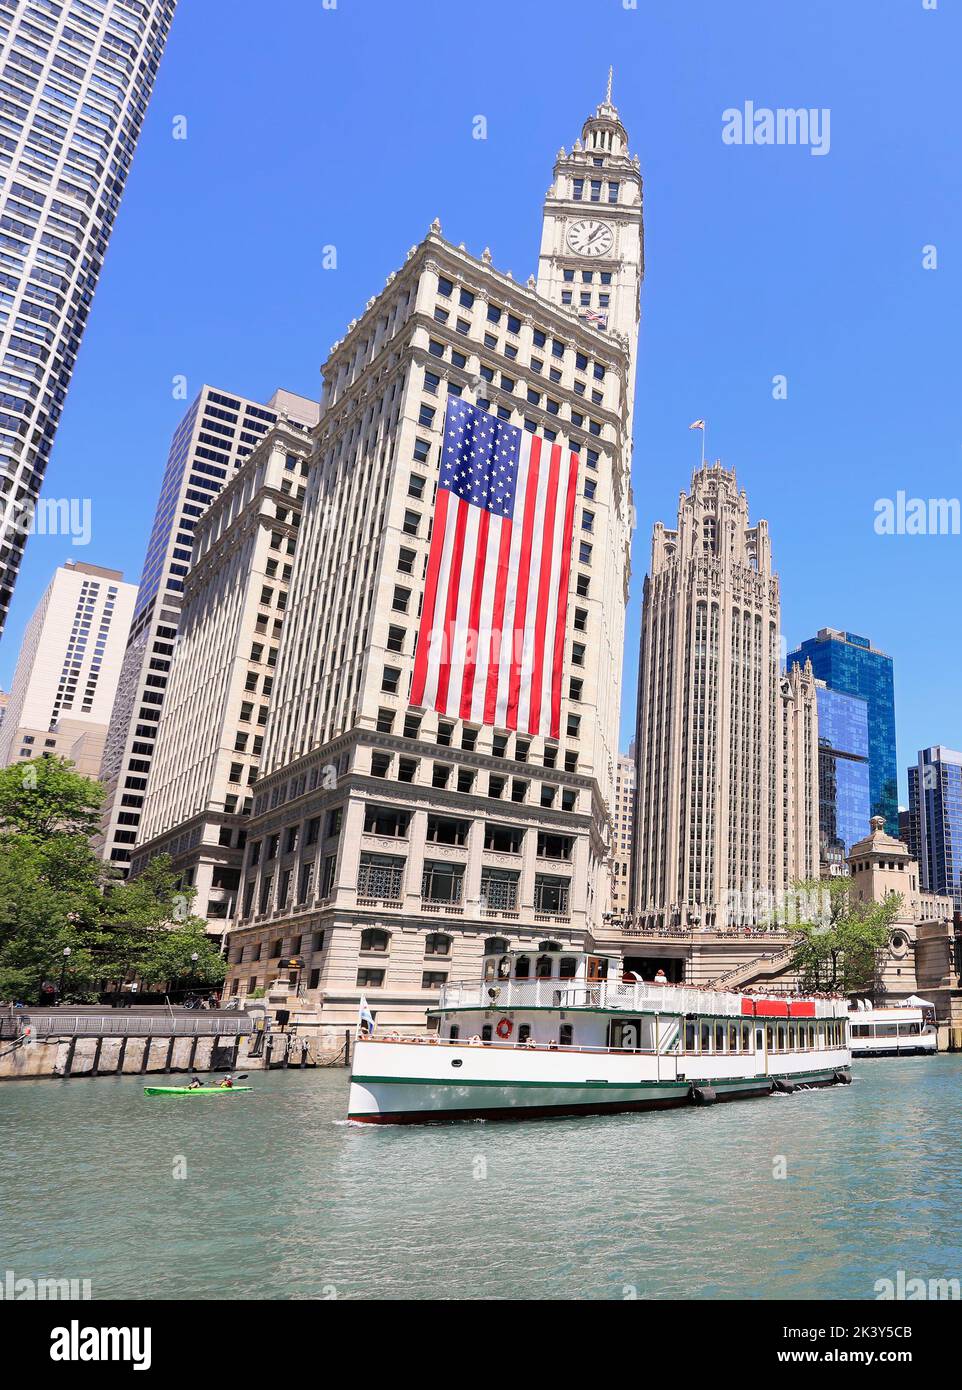 Crociera turistica di Chicago e skyline sul fiume, tra cui un'enorme bandiera americana, Illinois, USA Foto Stock